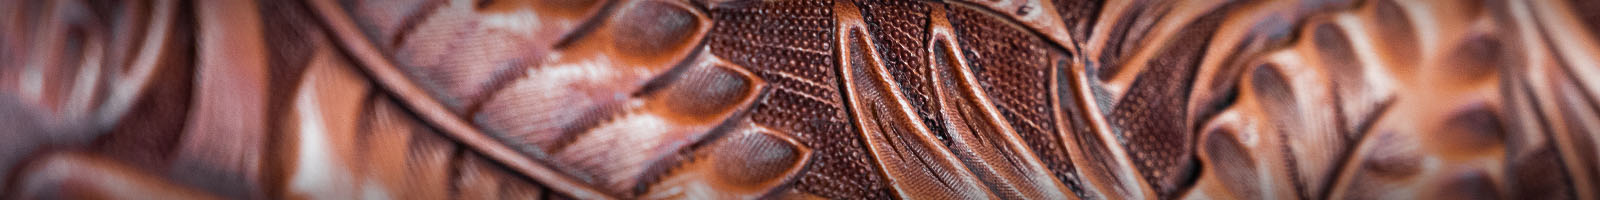 Image of hand-tooled leather saddle